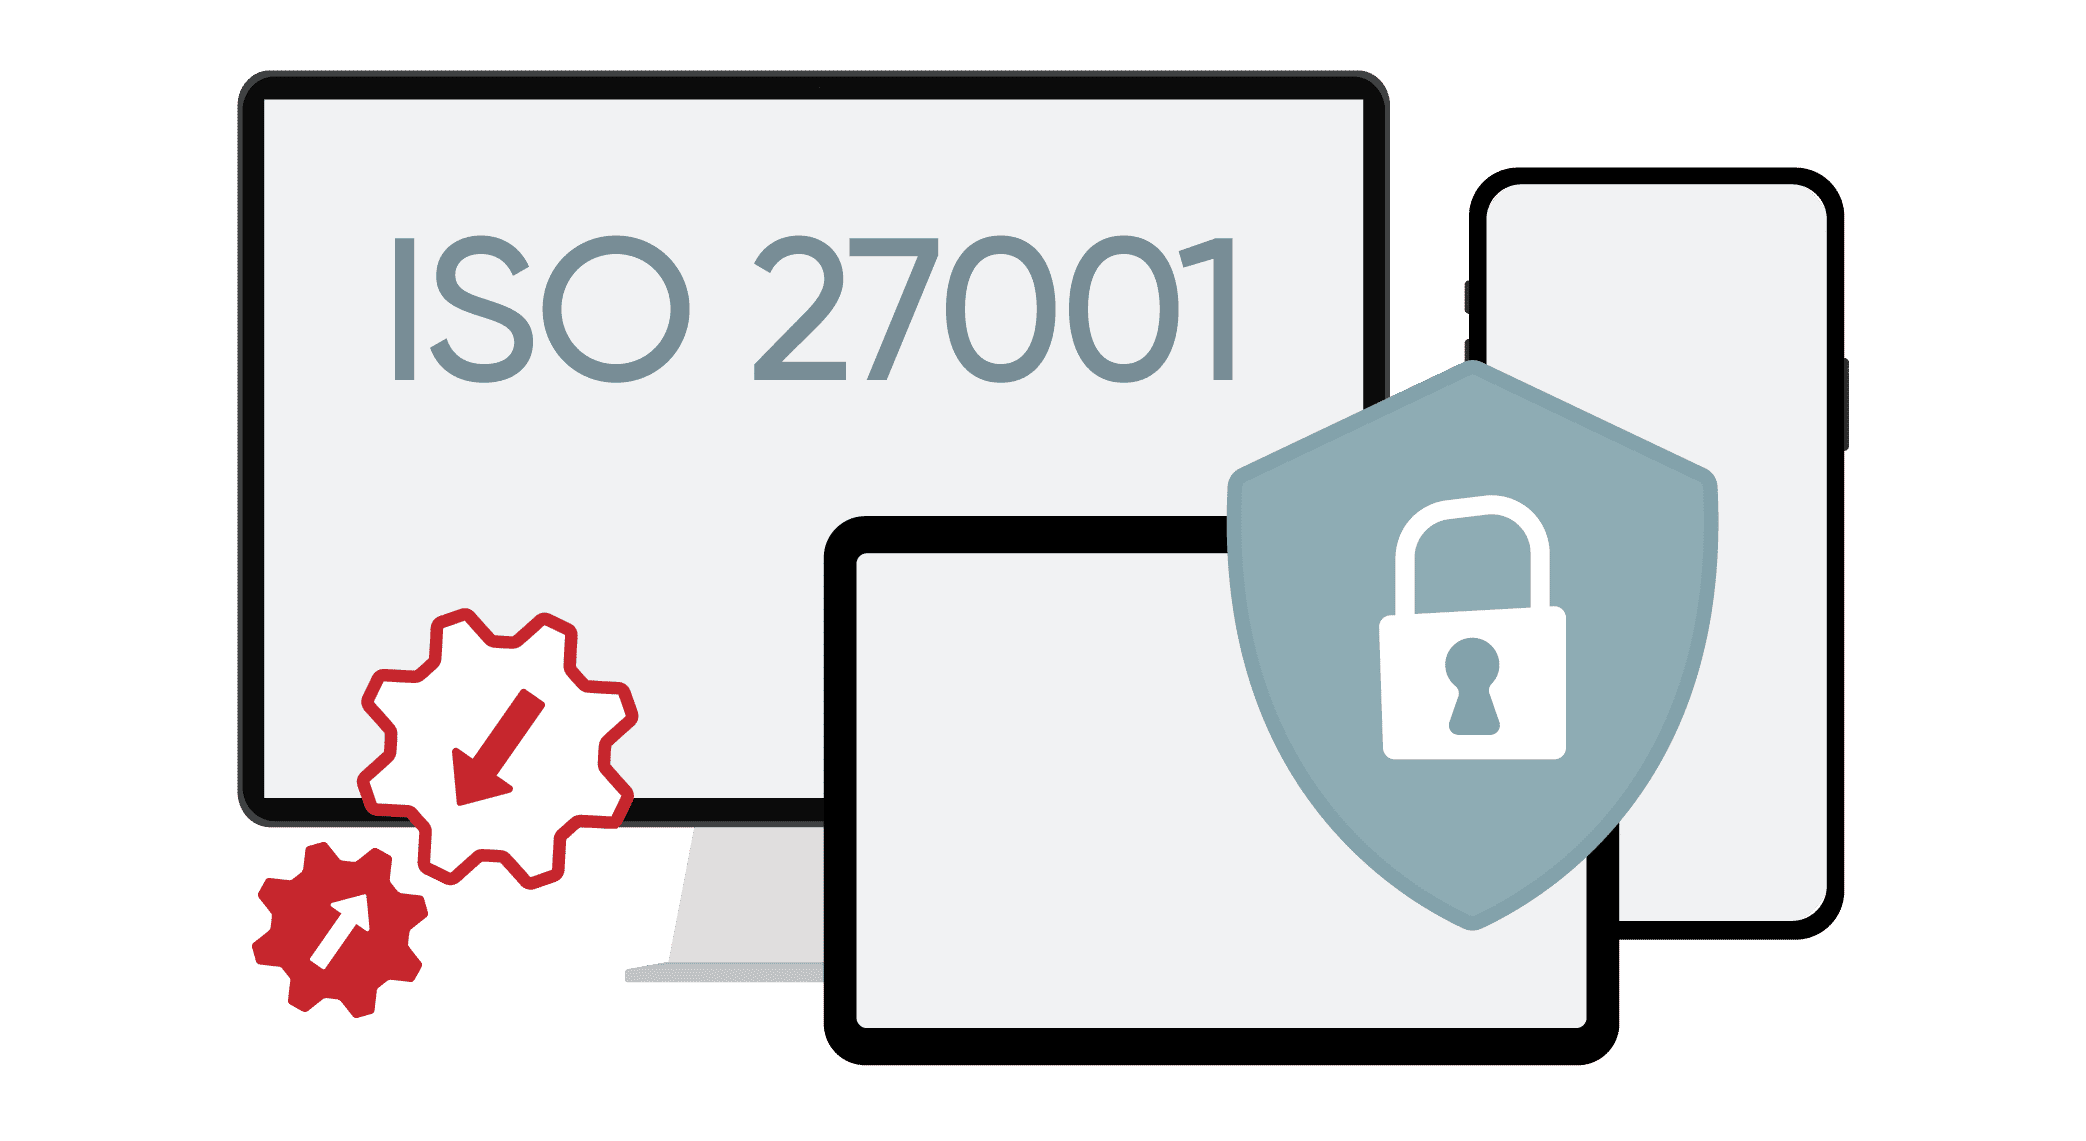 ISO 27001 integraties gecertificeerd integrations workplace management tool